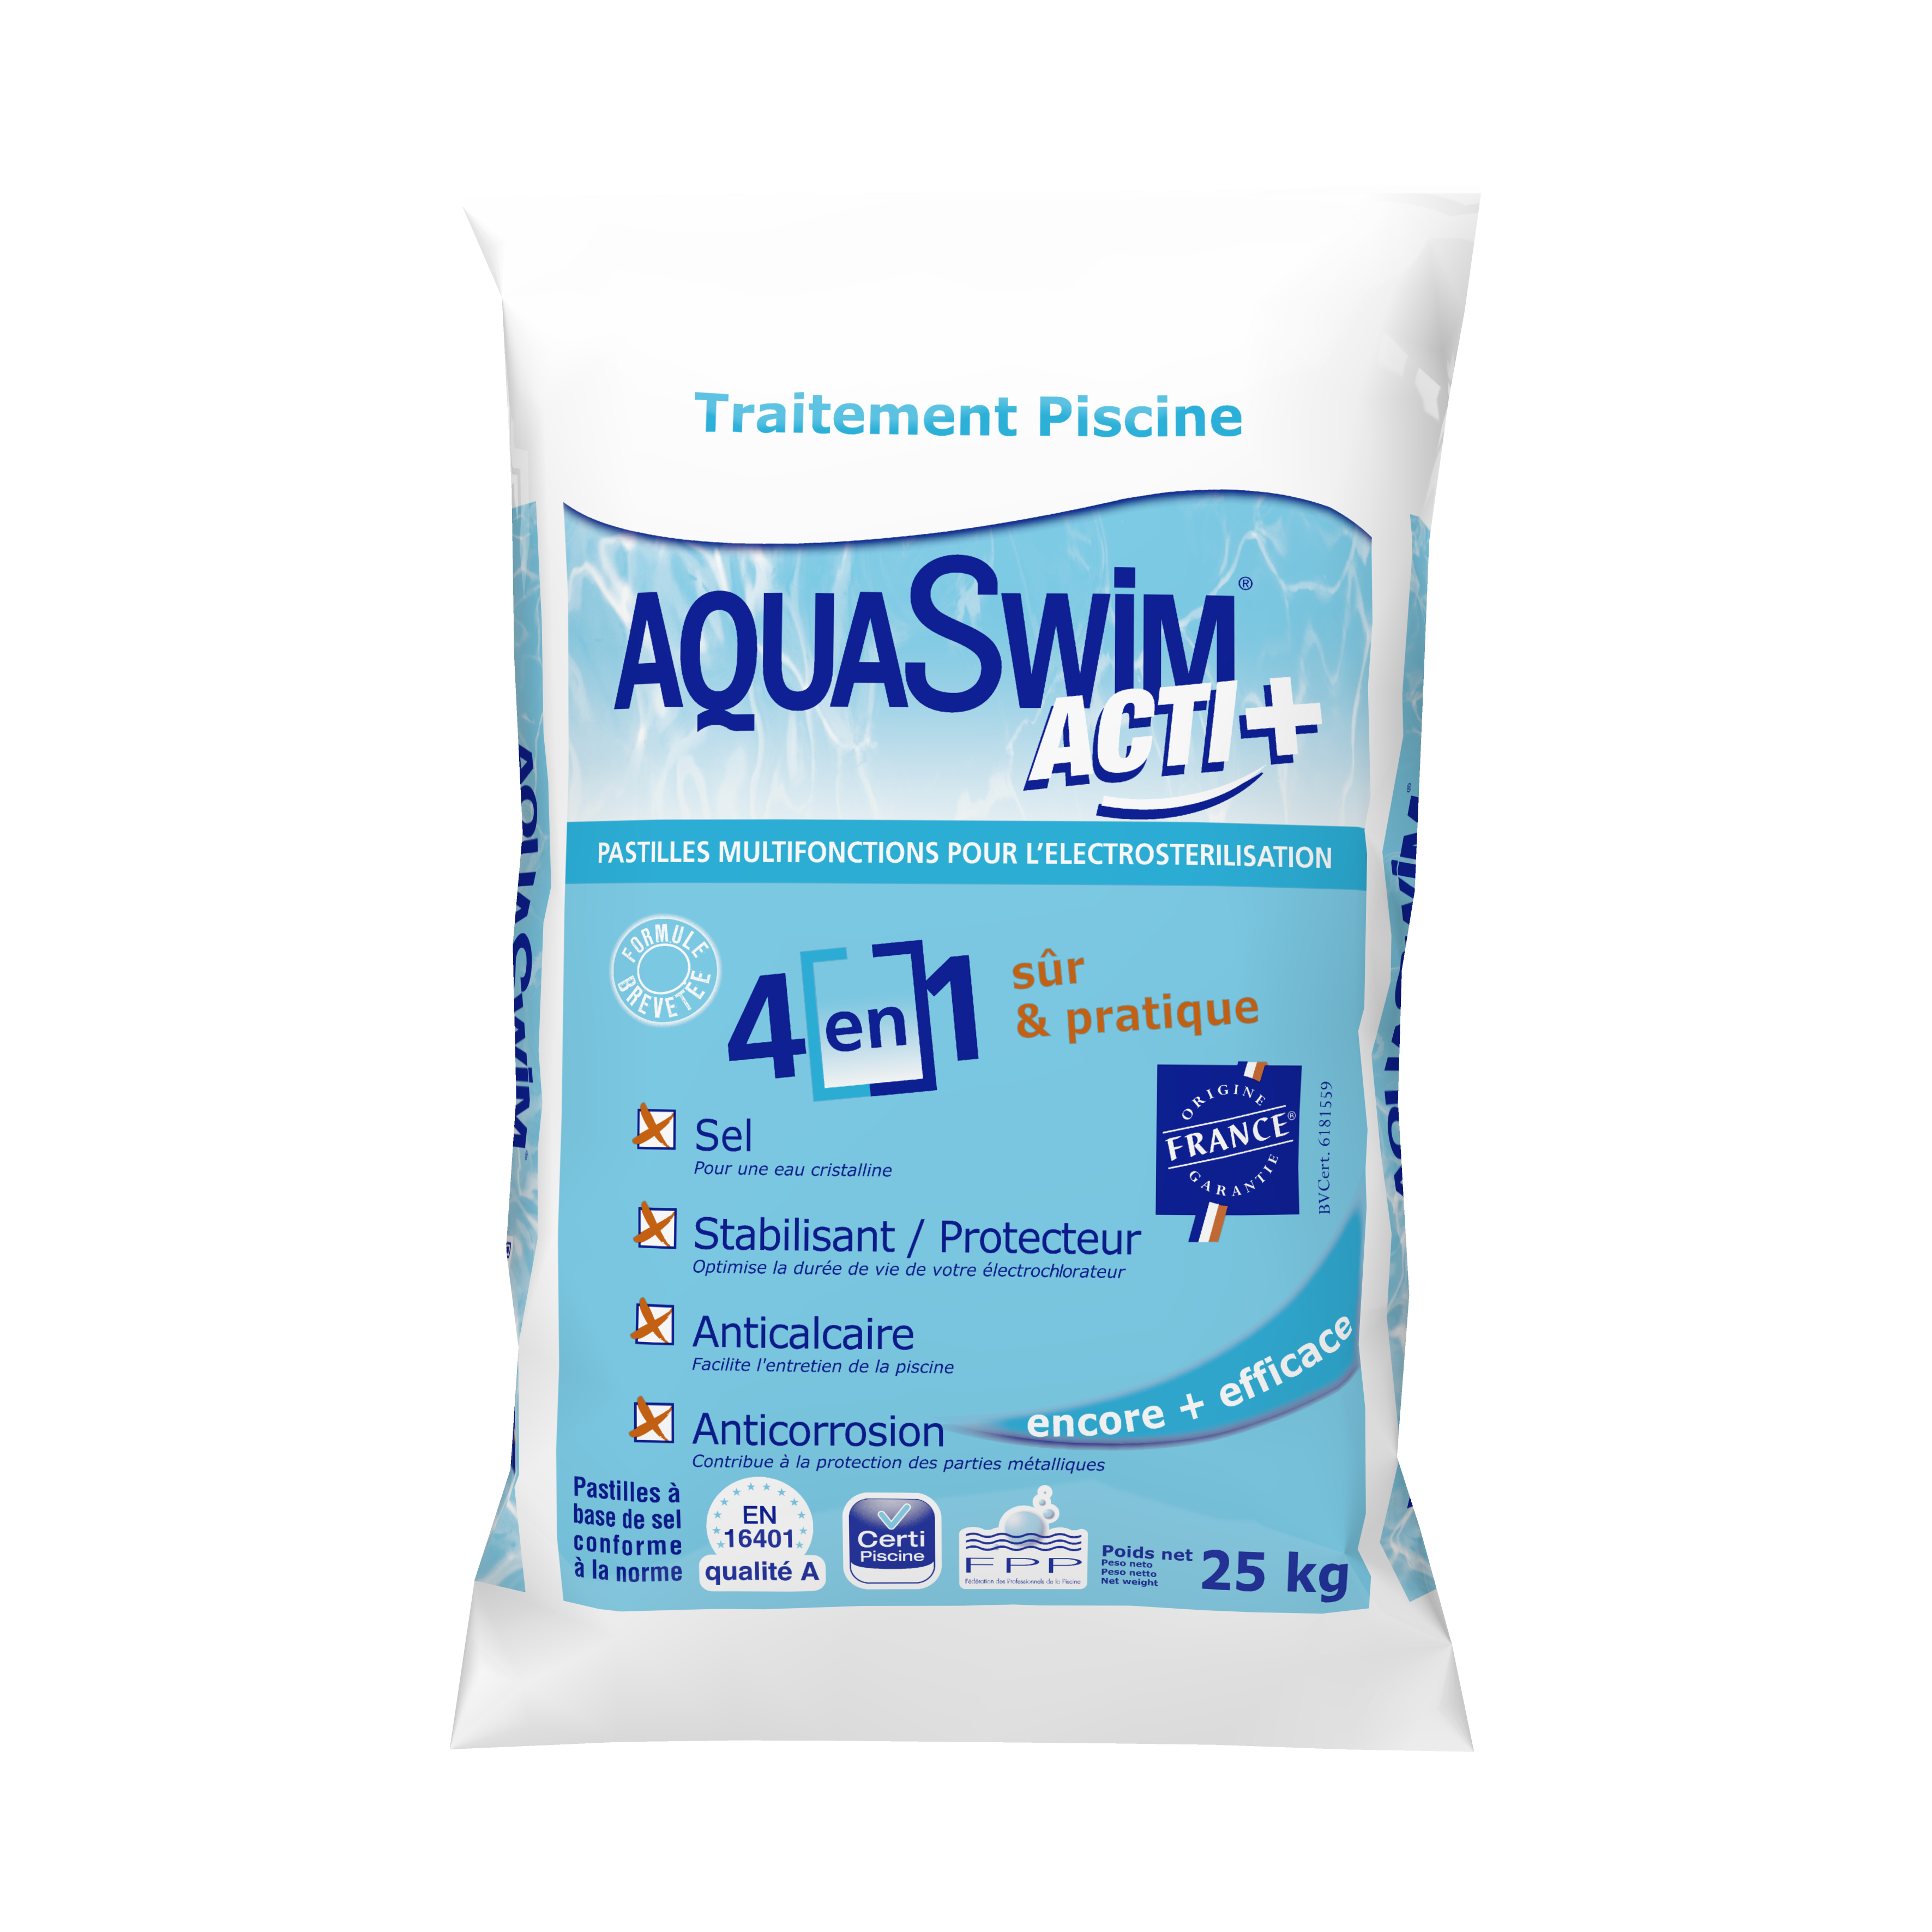 Désinfecter son eau de piscine naturellement avec AquaSwim Acti+